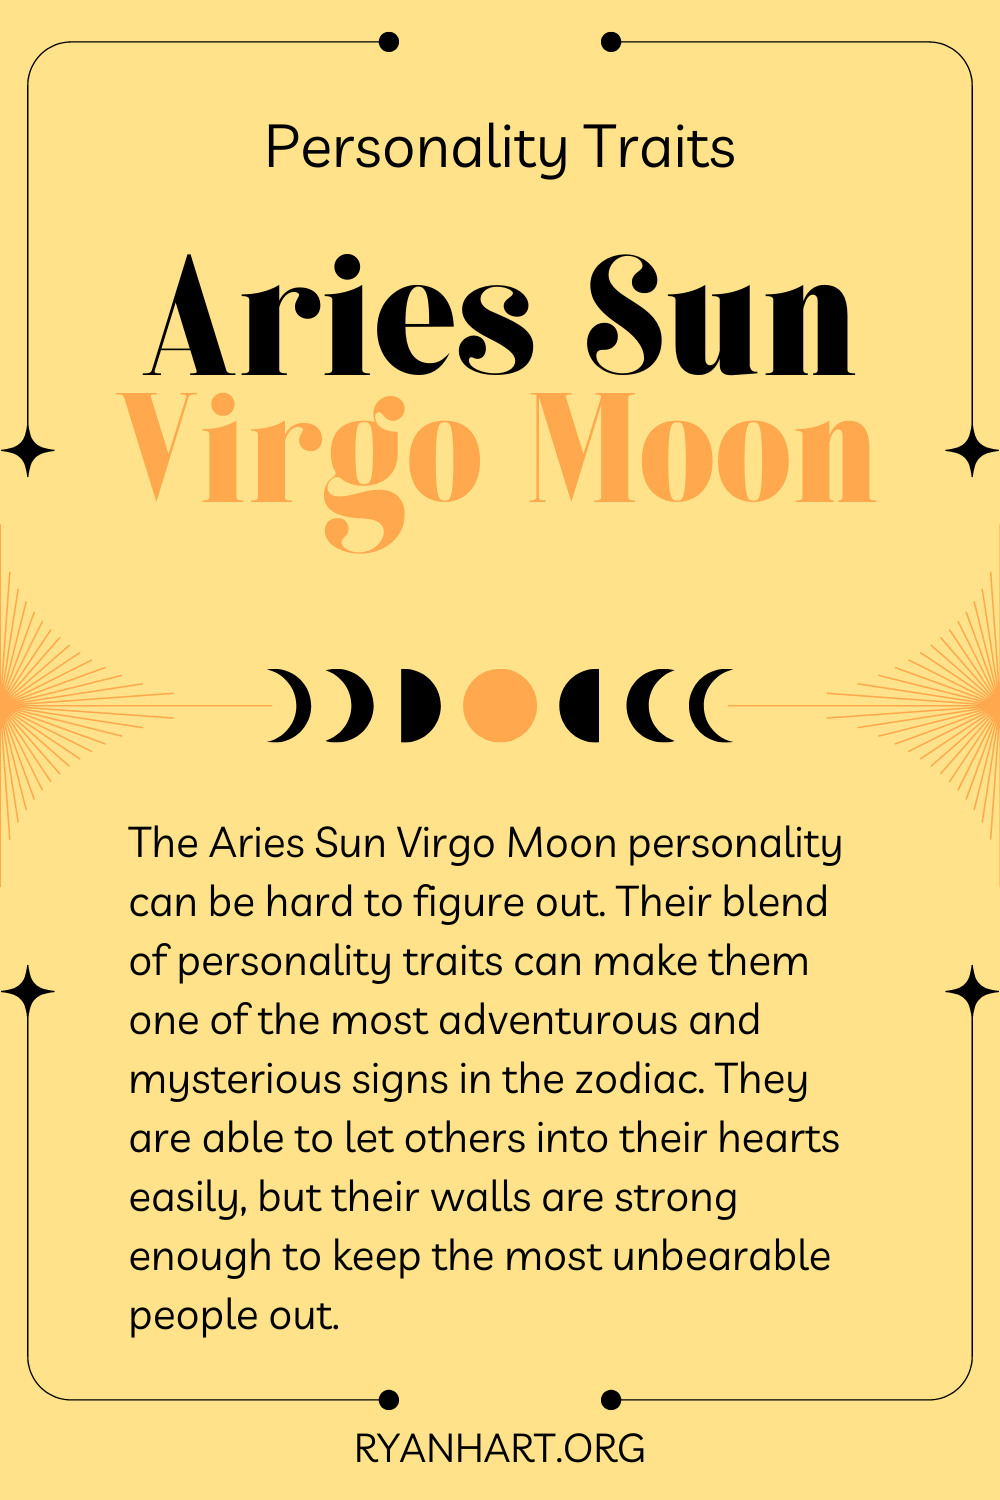  Aries Sun Virgo Moon លក្ខណៈបុគ្គលិកលក្ខណៈ